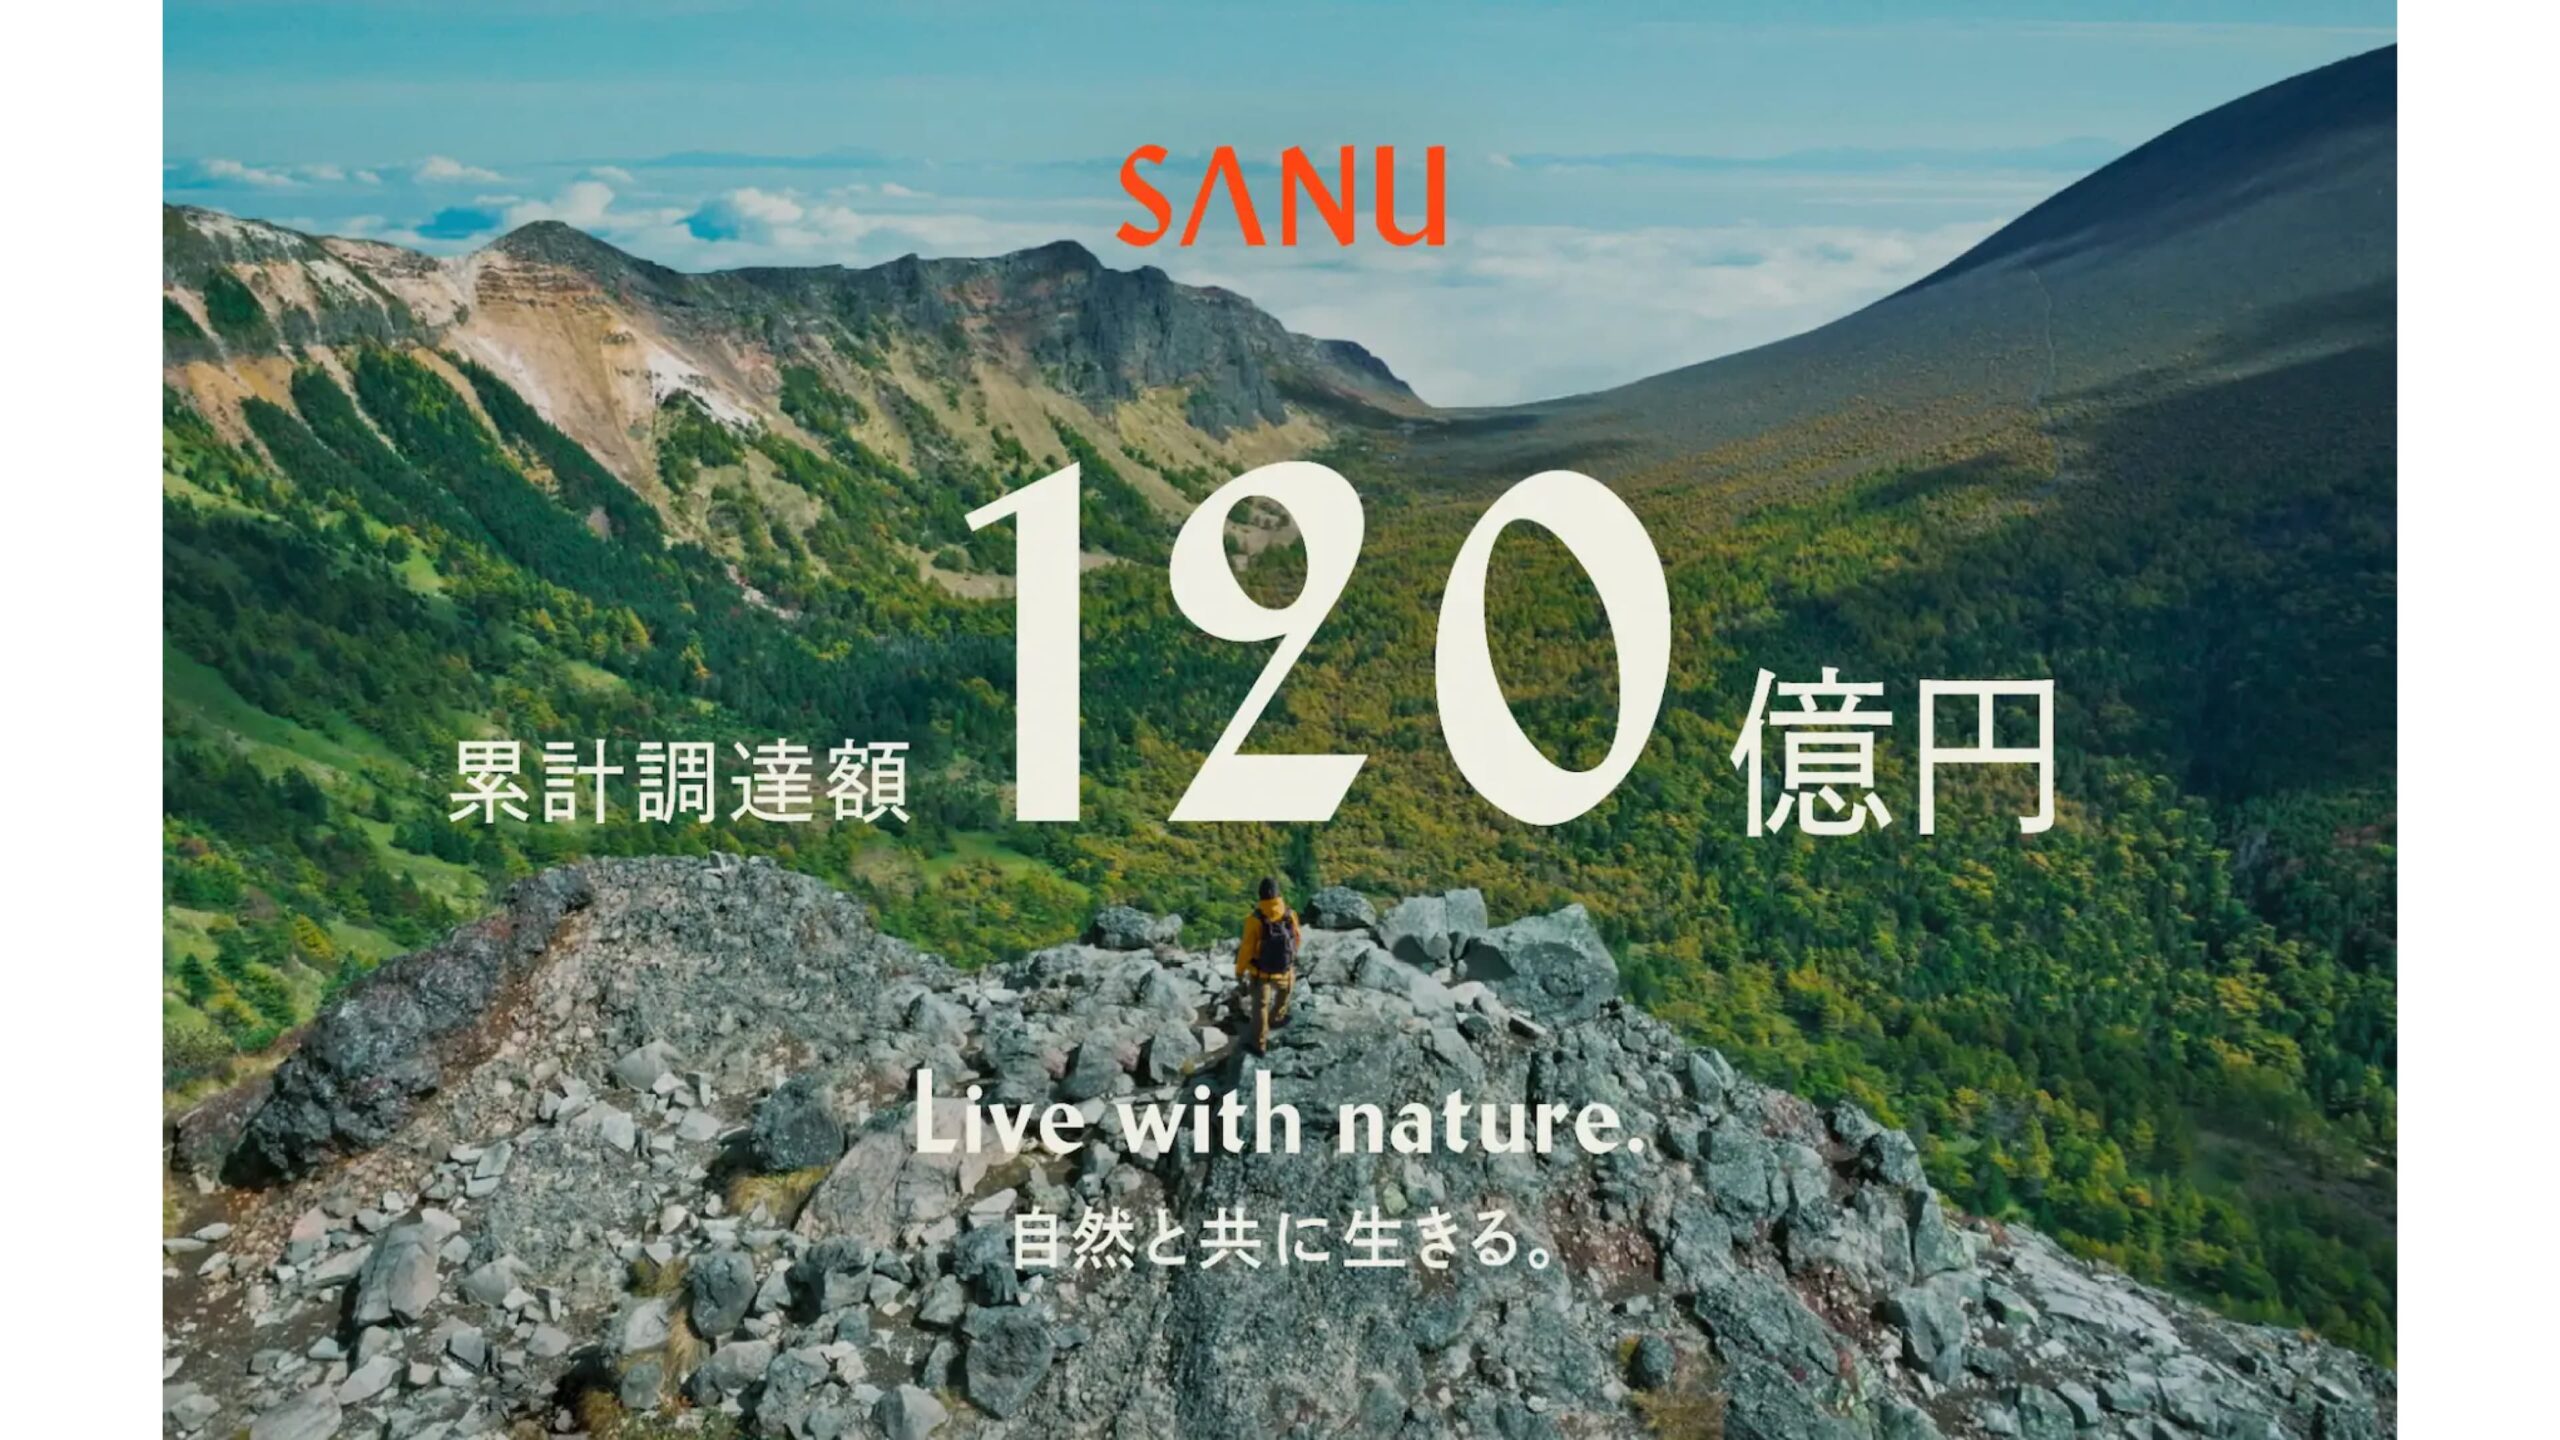 株式会社Sanu、70億円の追加資金調達を実行ー累積調達金額は120億円へ